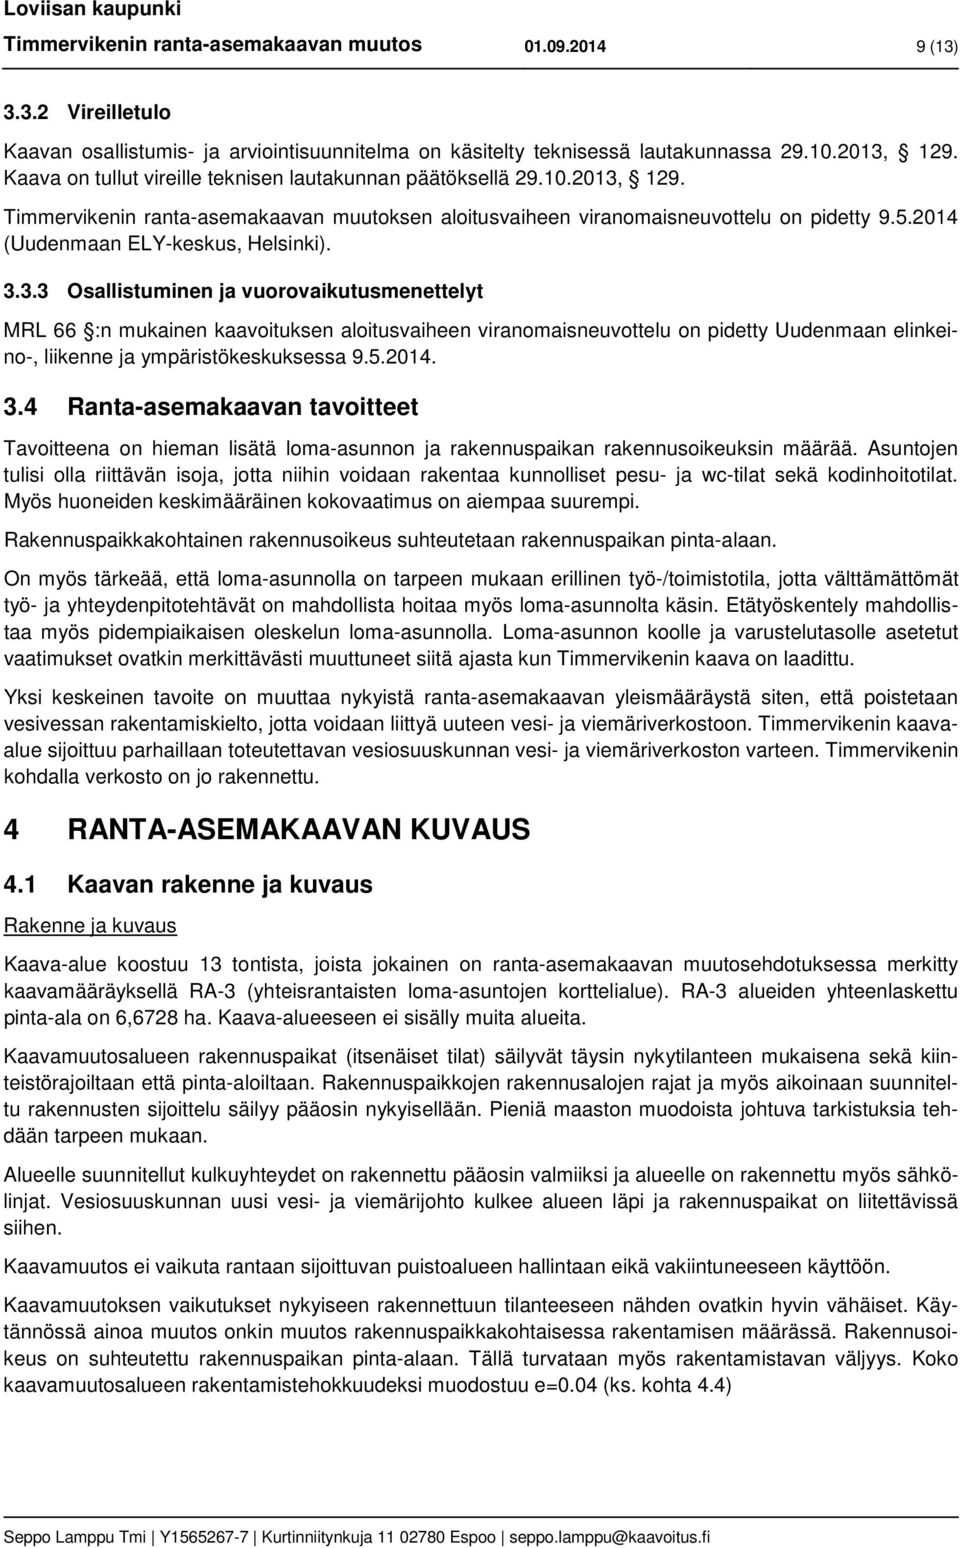 3.3.3 Osallistuminen ja vurvaikutusmenettelyt MRL 66 :n mukainen kaavituksen alitusvaiheen viranmaisneuvttelu n pidetty Uudenmaan elinkein-, liikenne ja ympäristökeskuksessa 9.5.2014. 3.